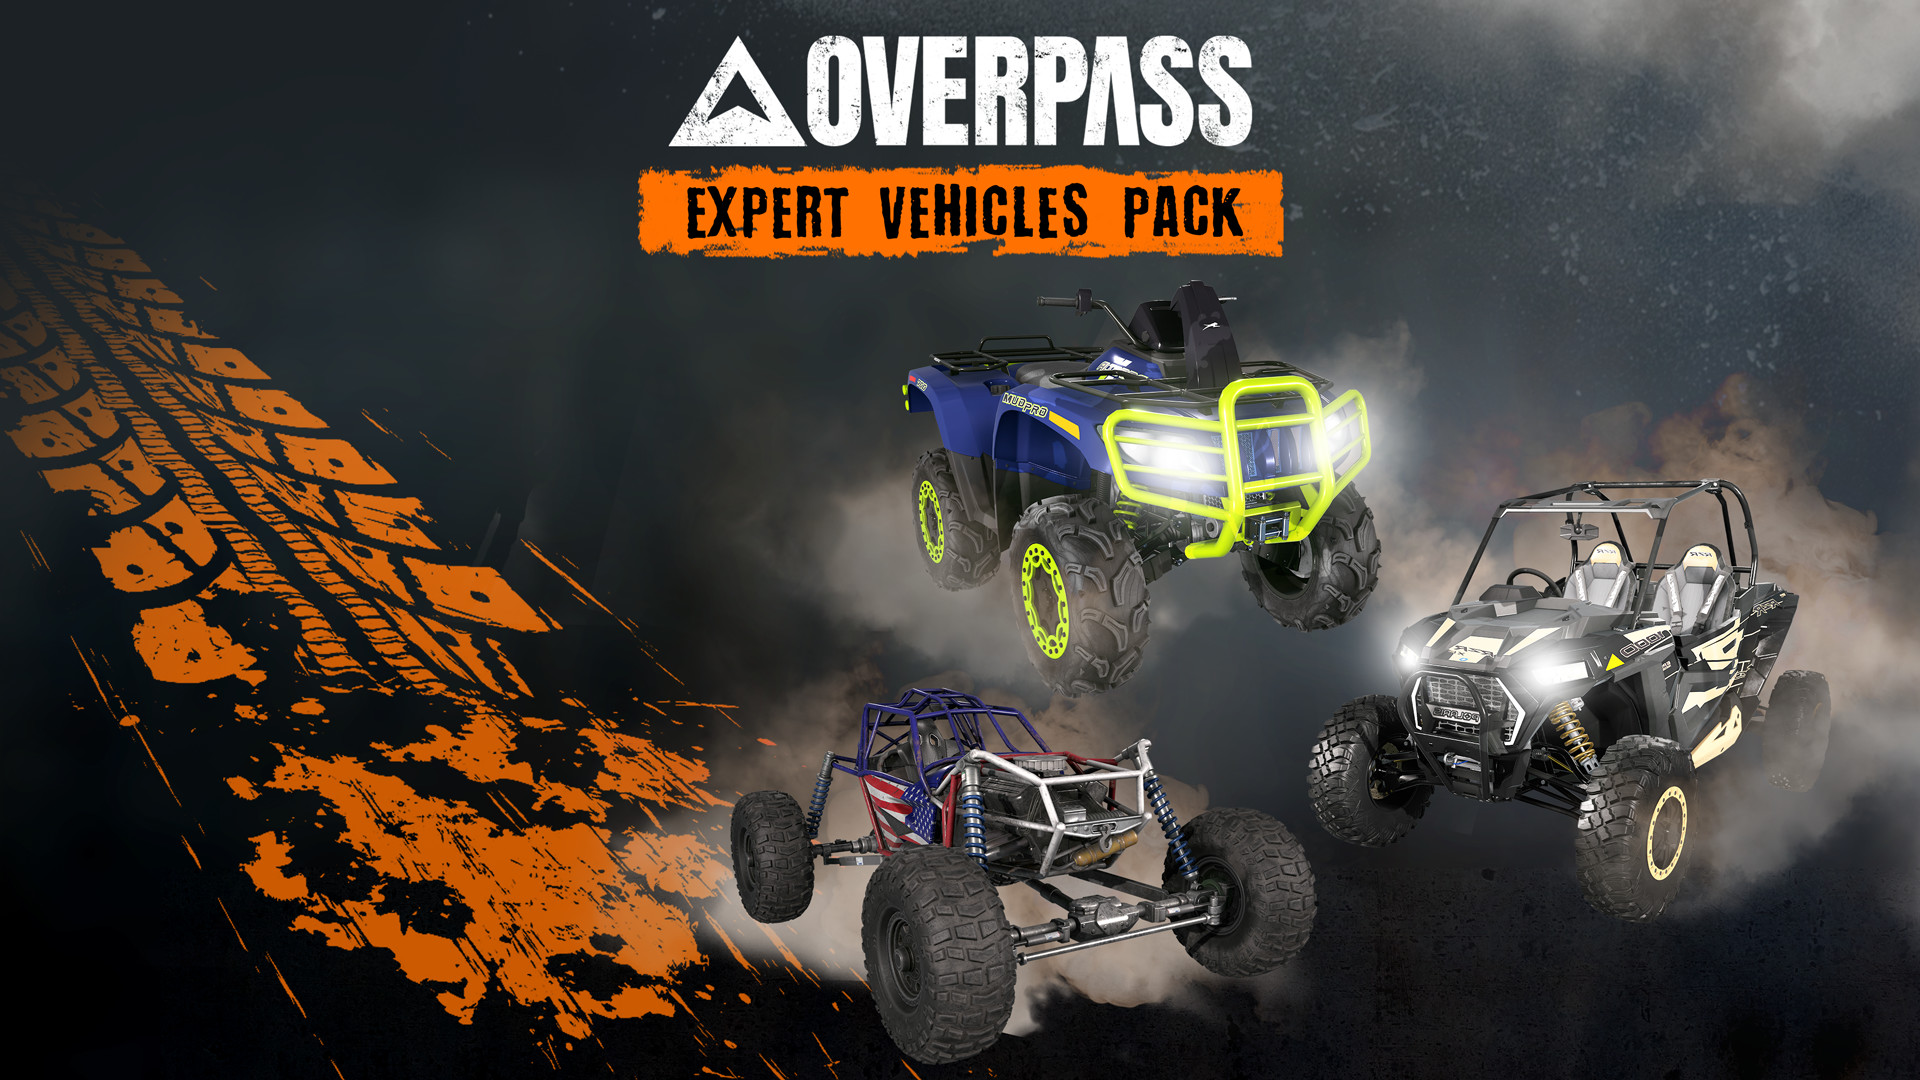 OVERPASS - Expert Vehicles Pack DLC Steam CD Key 2.36$